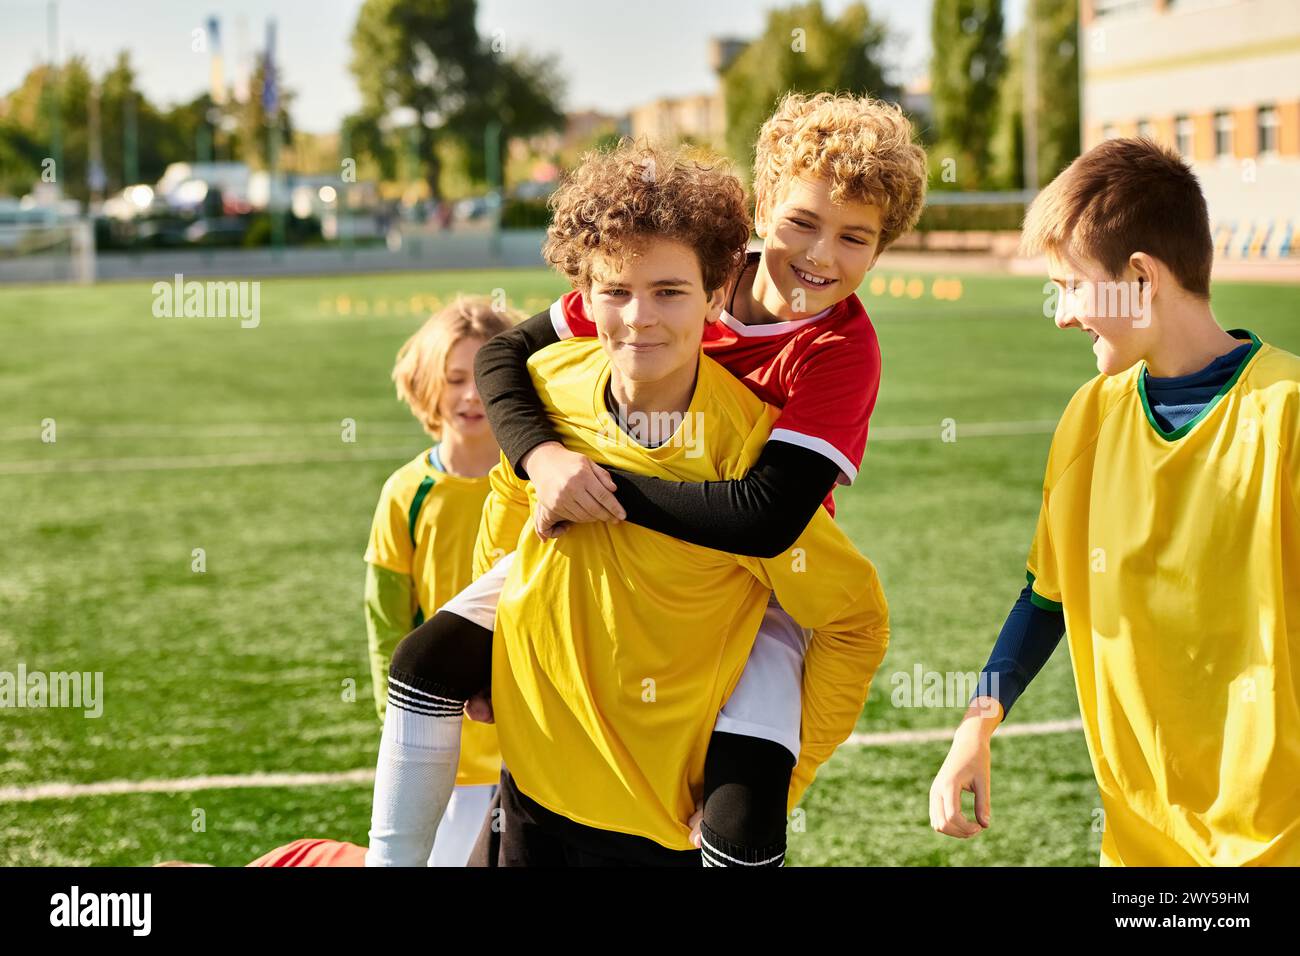 Eine Gruppe kleiner Jungen steht triumphierend auf einem Fußballfeld und feiert ihren Sieg mit Lächeln und High Fives nach einem Wettkampf. Stockfoto